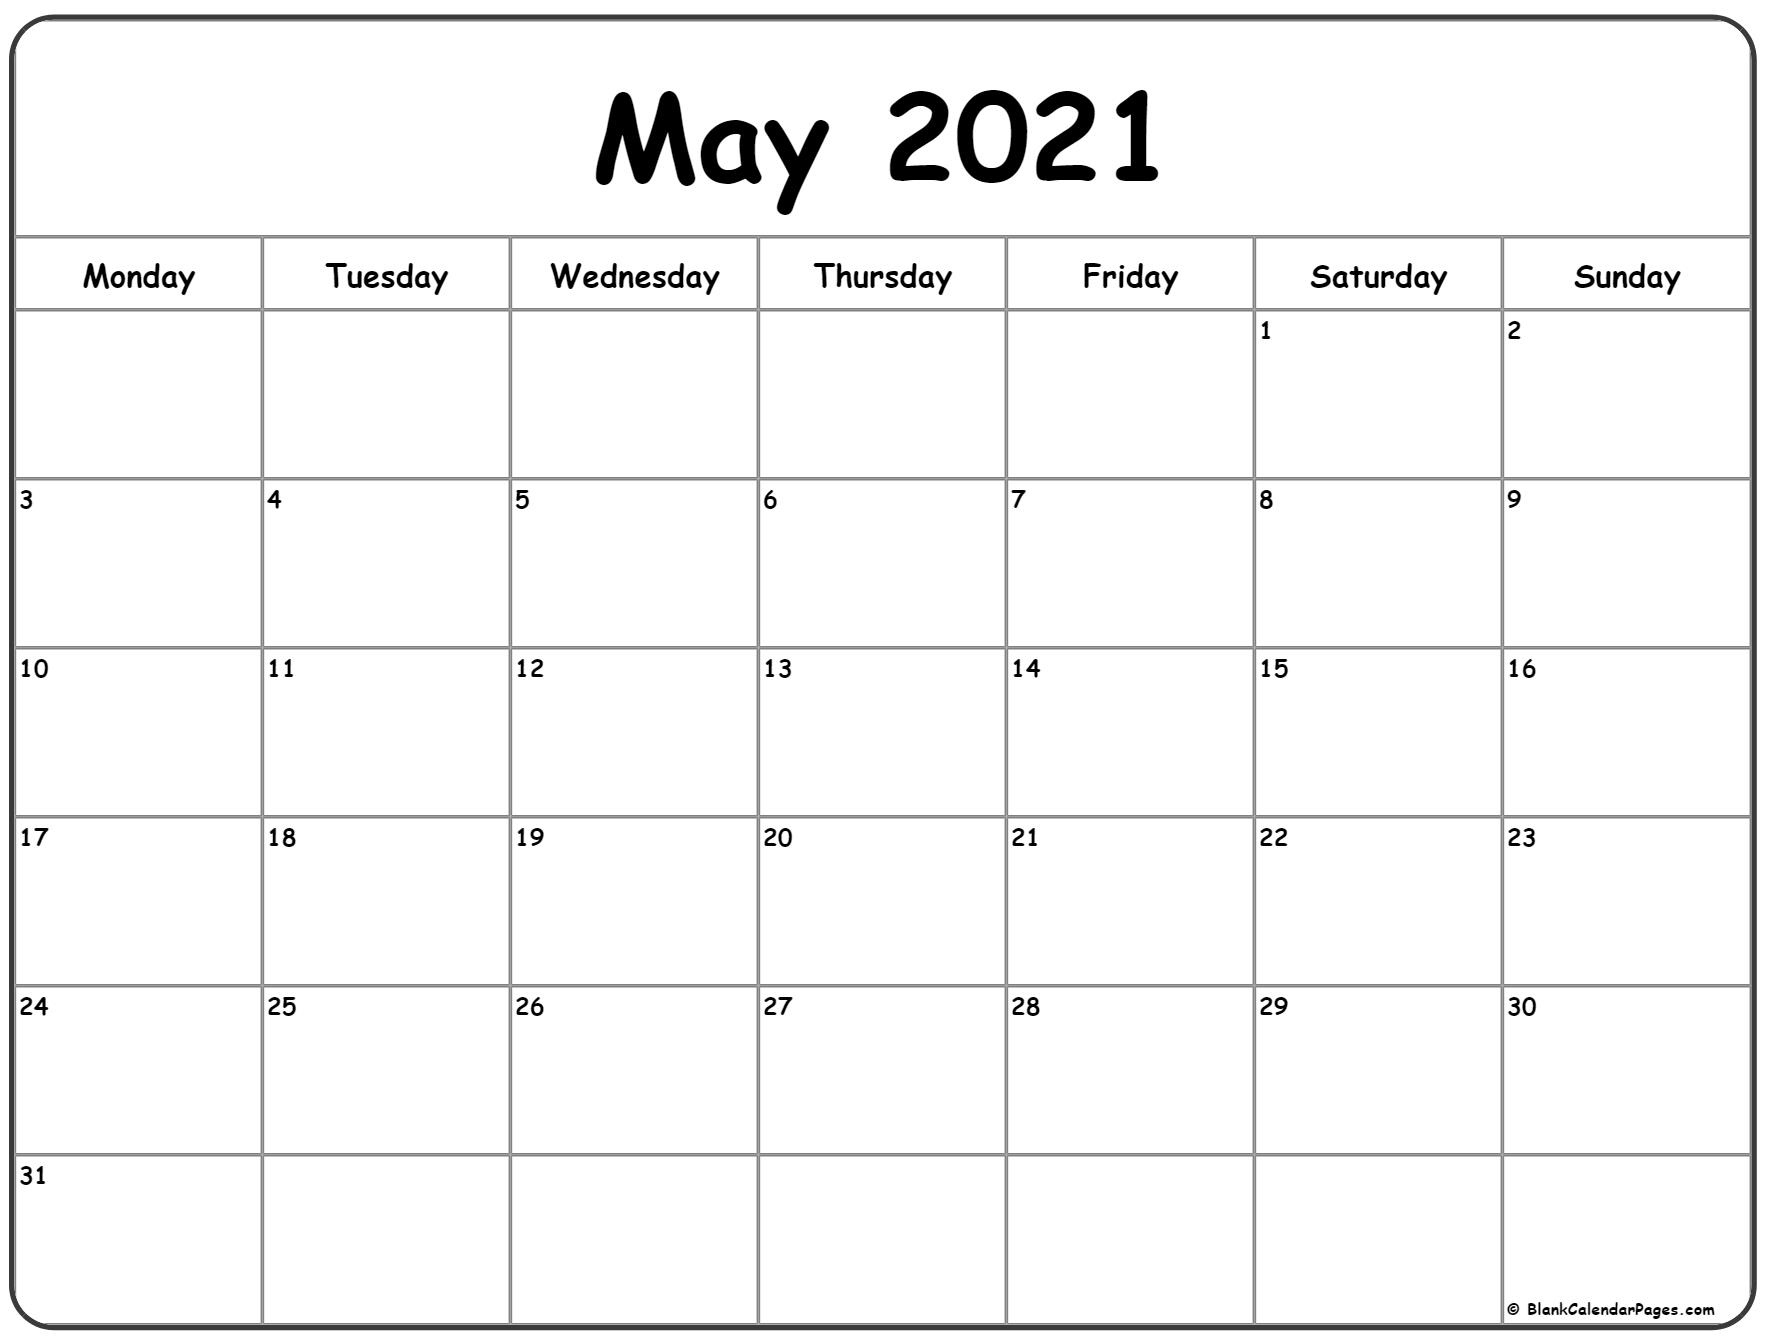 May 2021 Calendar - Calendar 2021 August 2021 Calendar Starting Monday